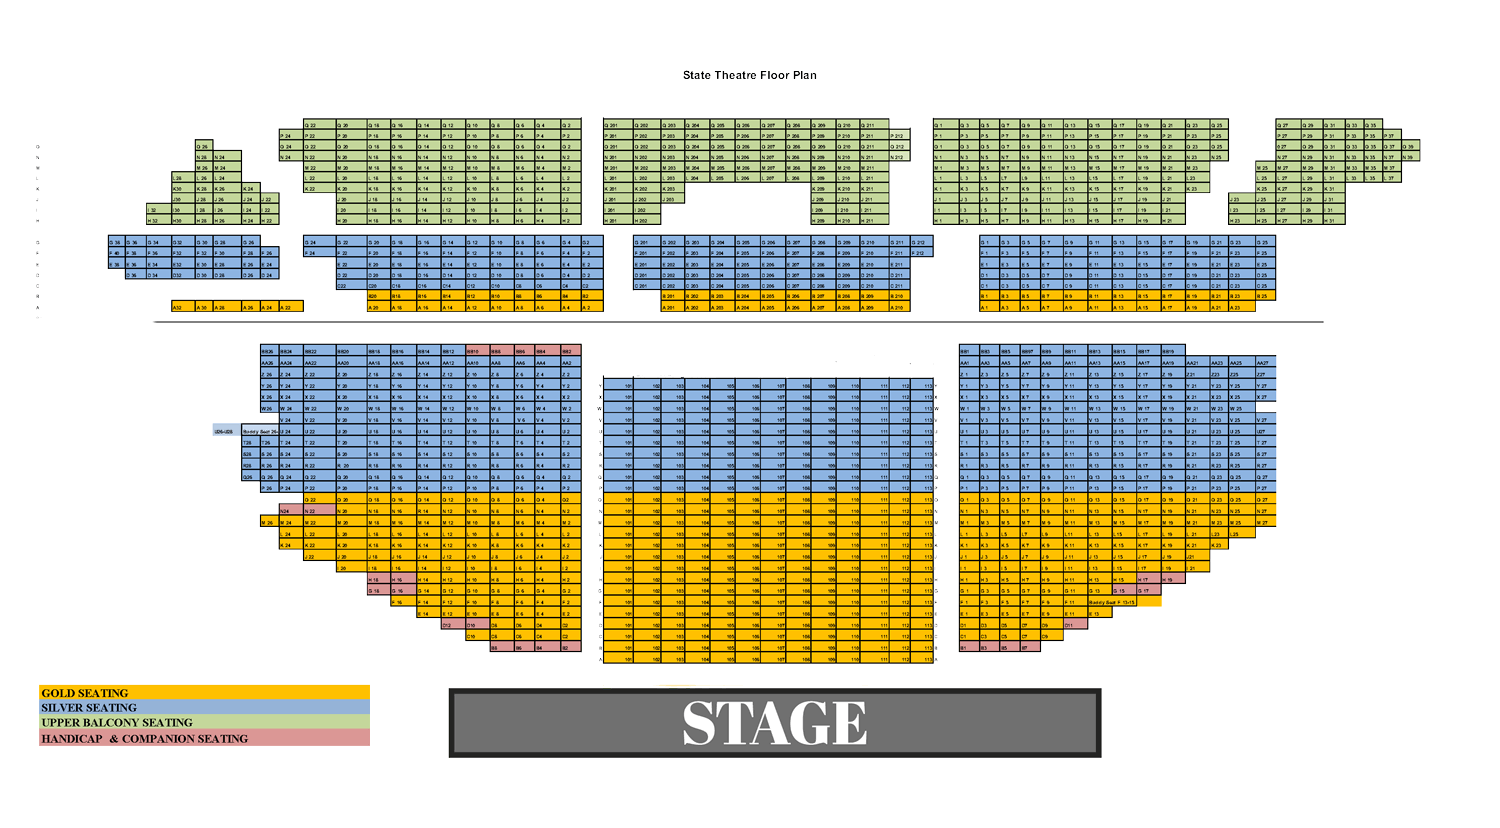 Music Box Theater New York Seating Chart